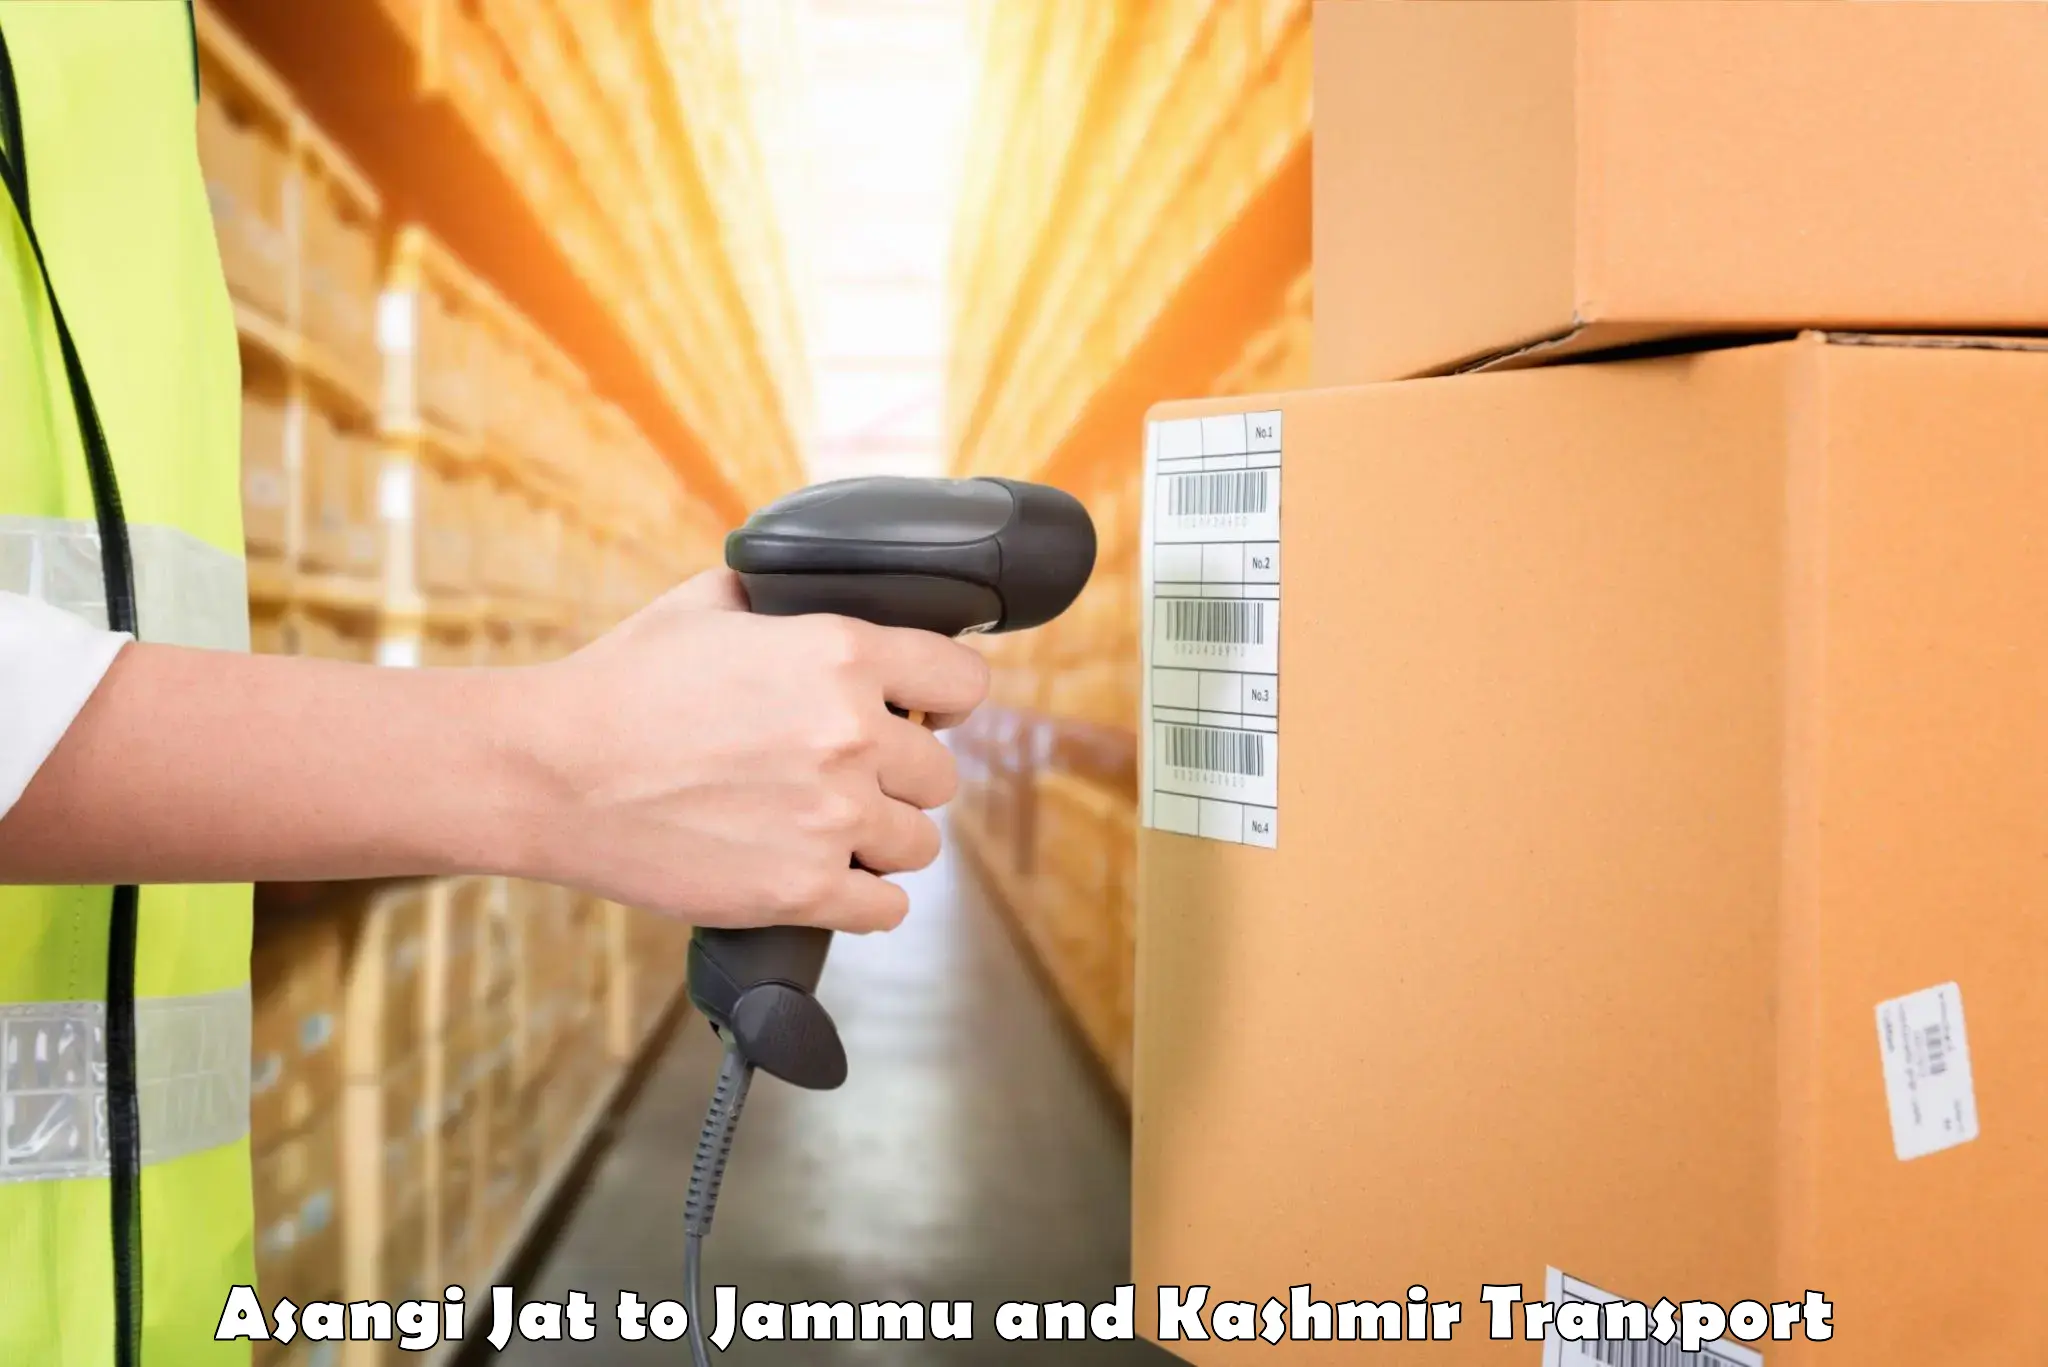 Furniture transport service Asangi Jat to Ramban